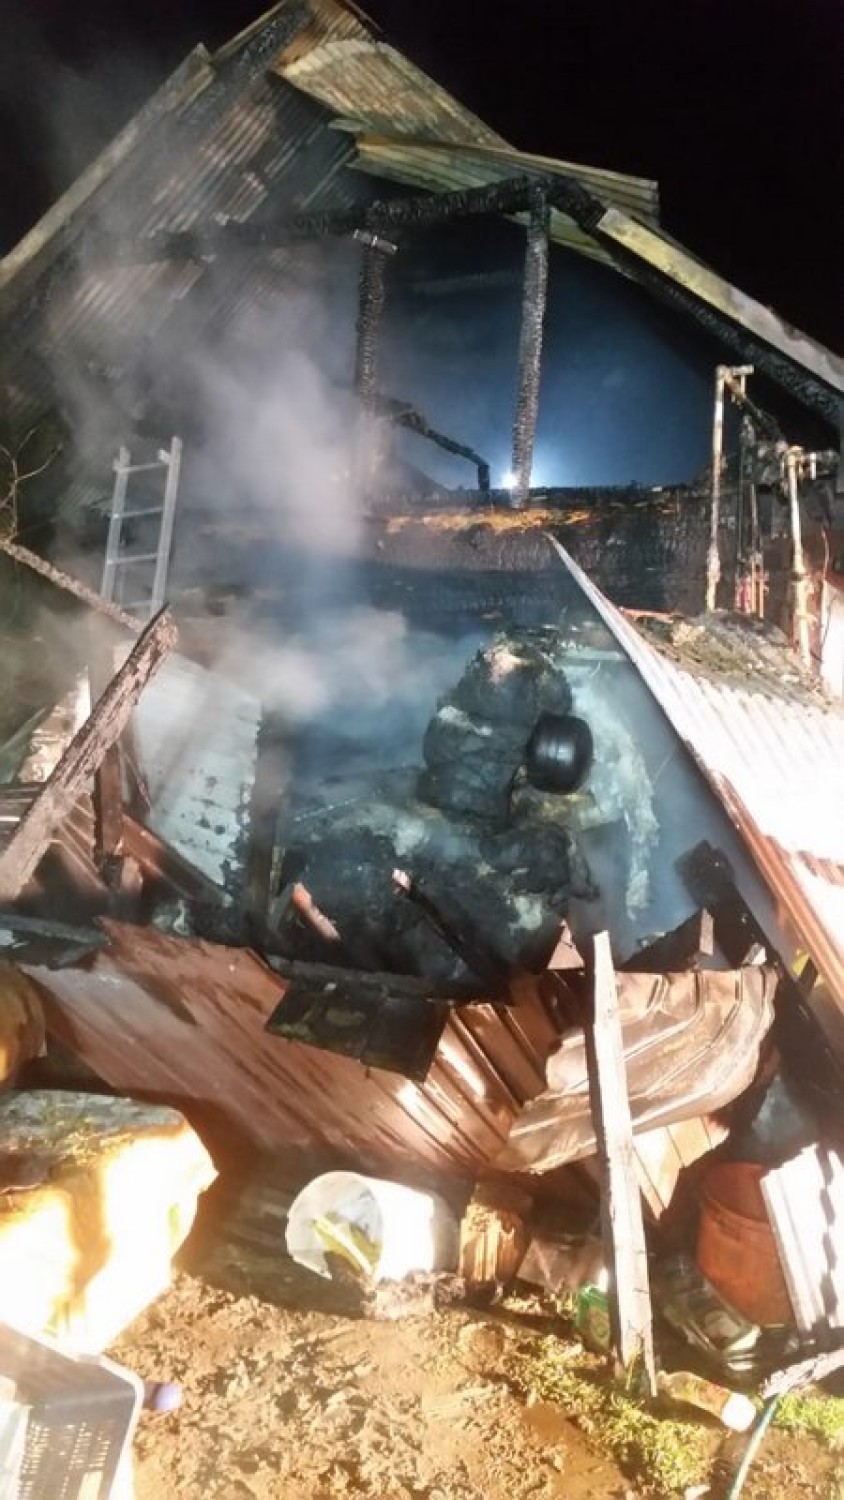 Maszkienice: pożar drewnianego domu, 4 osoby straciły dach nad głową [ZDJĘCIA]